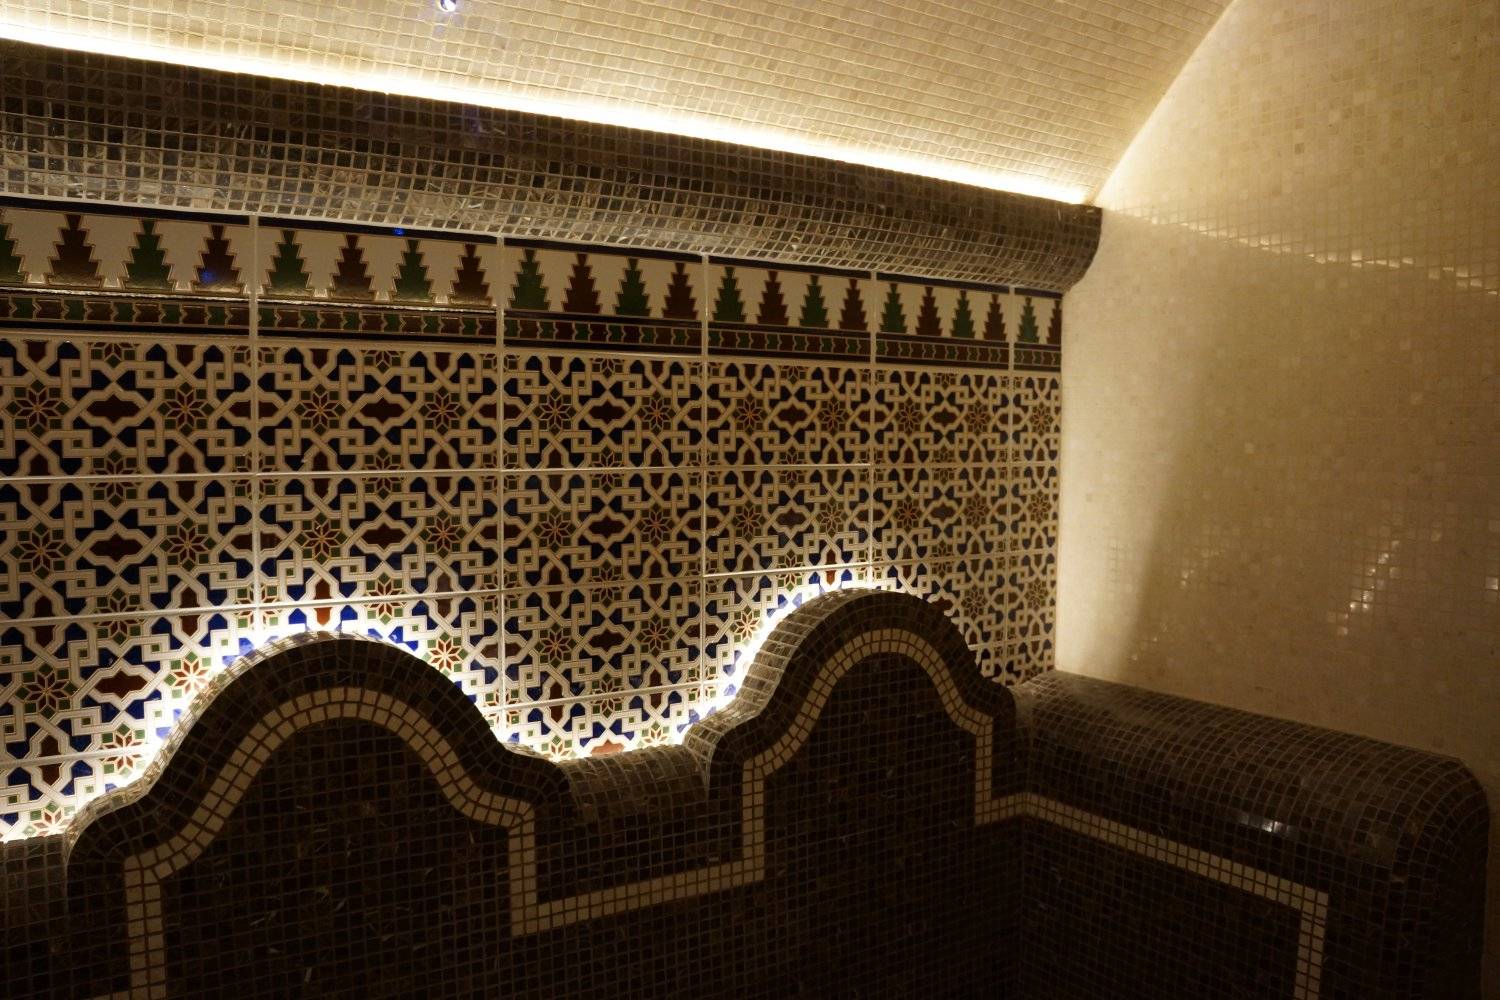 Панно из мозаики в интерьере ванной комнаты